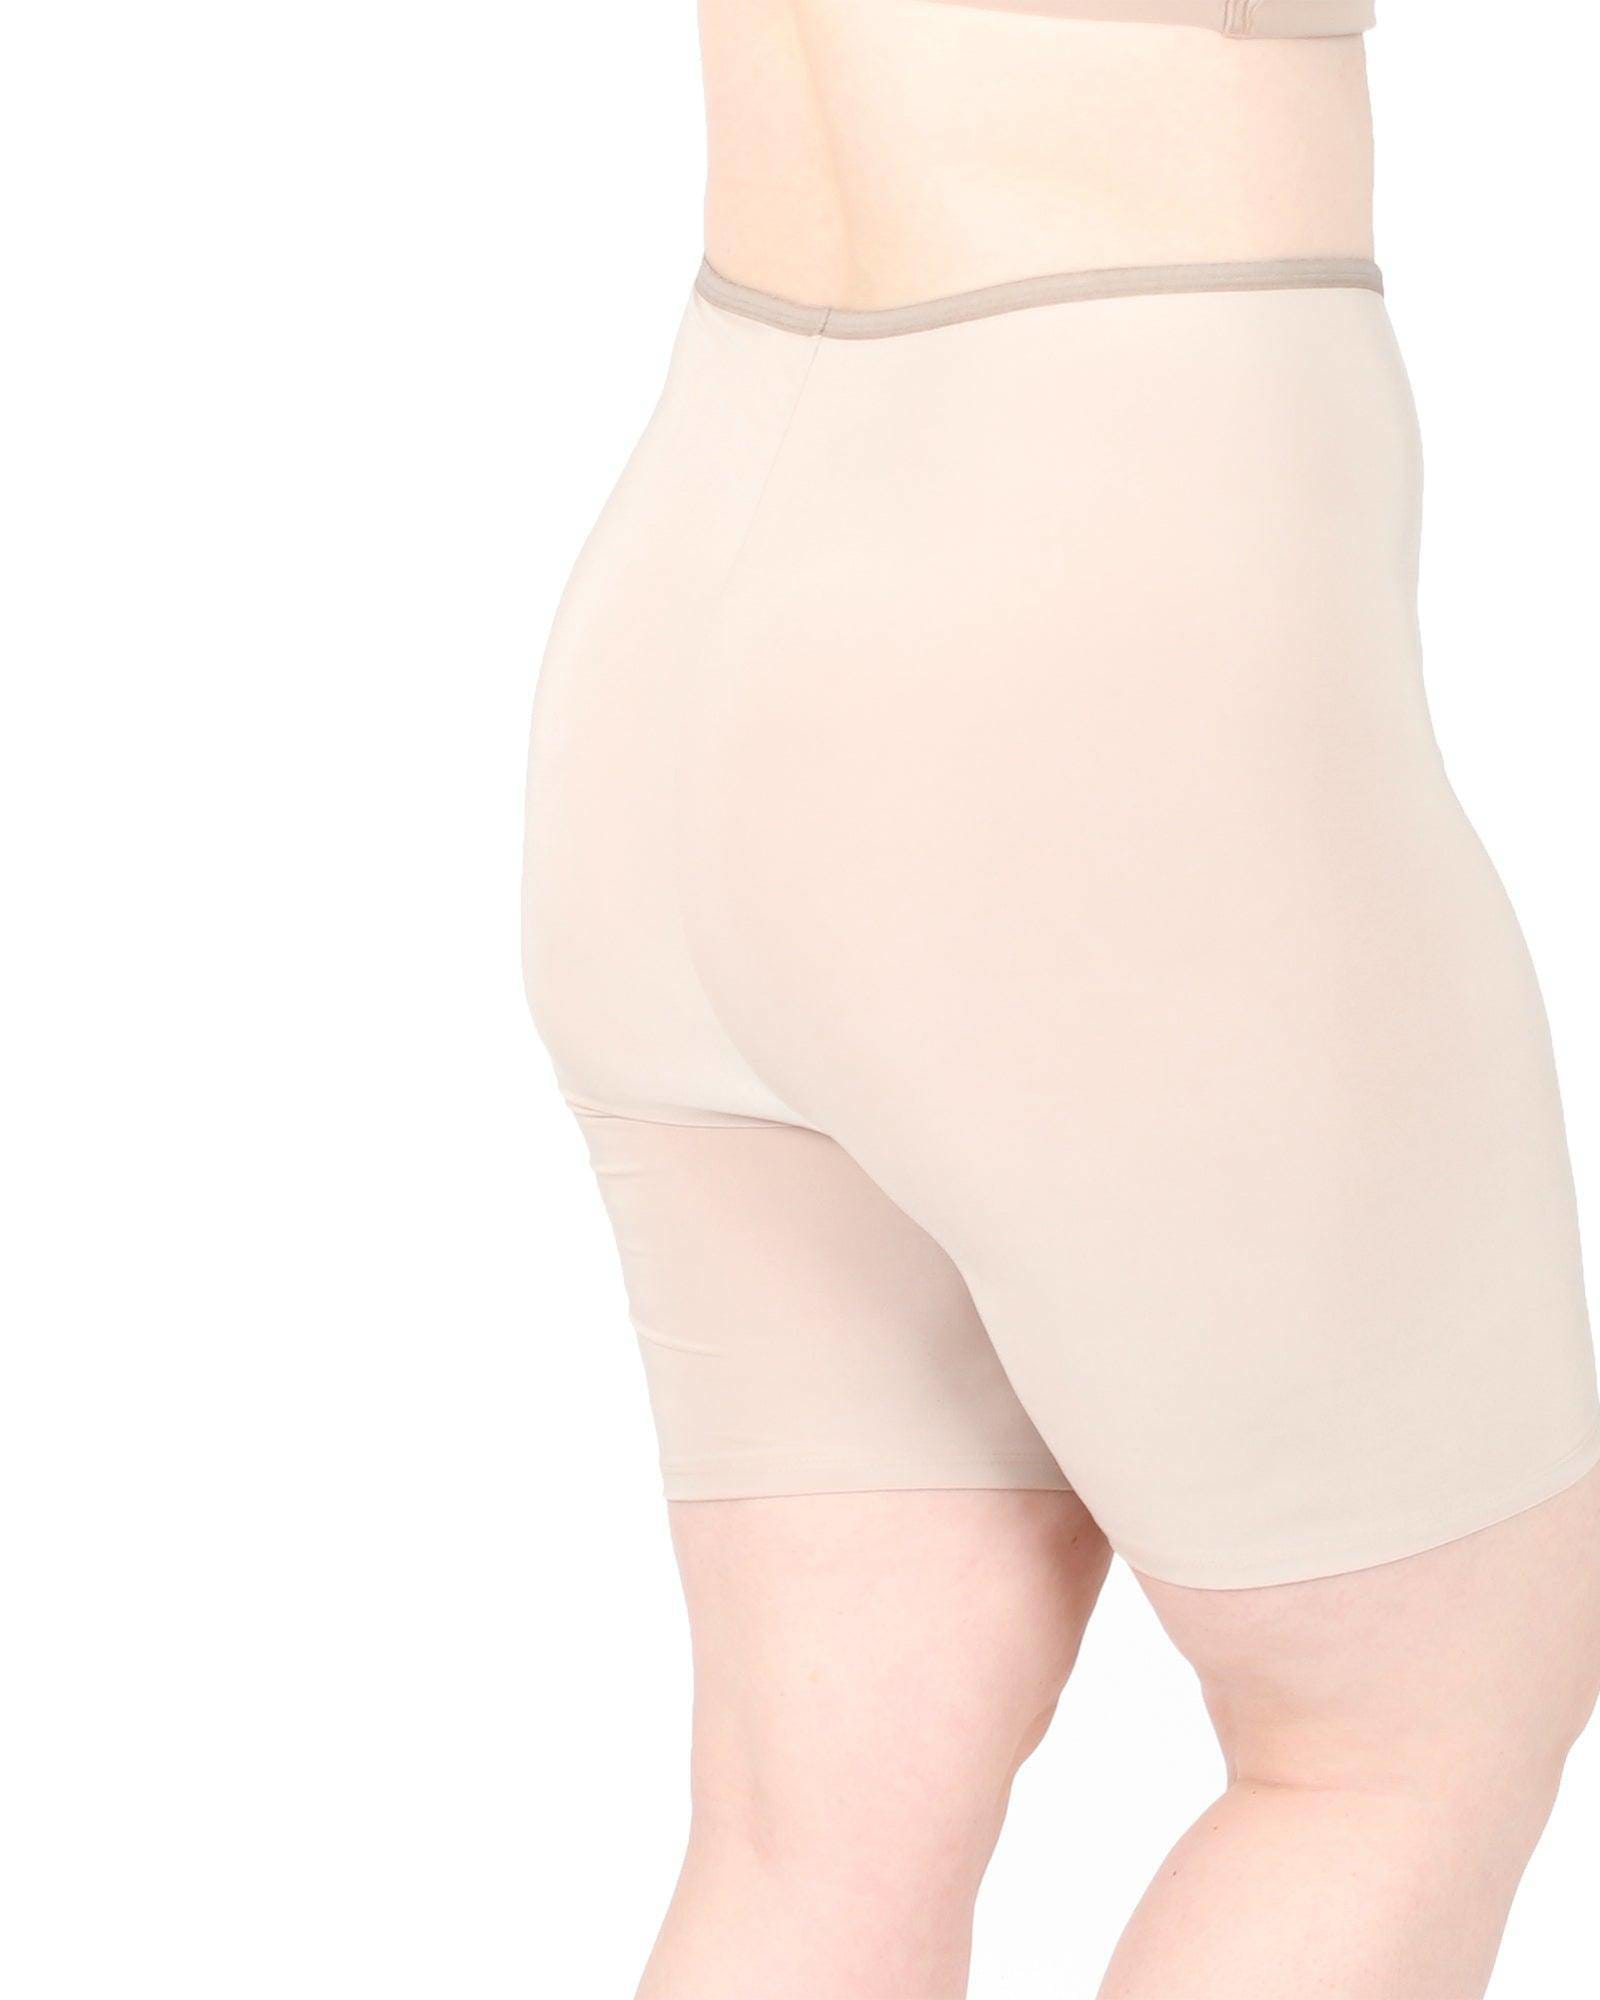 Plus Size Hip Balancing Chafe Free Shorts, AU 22-26